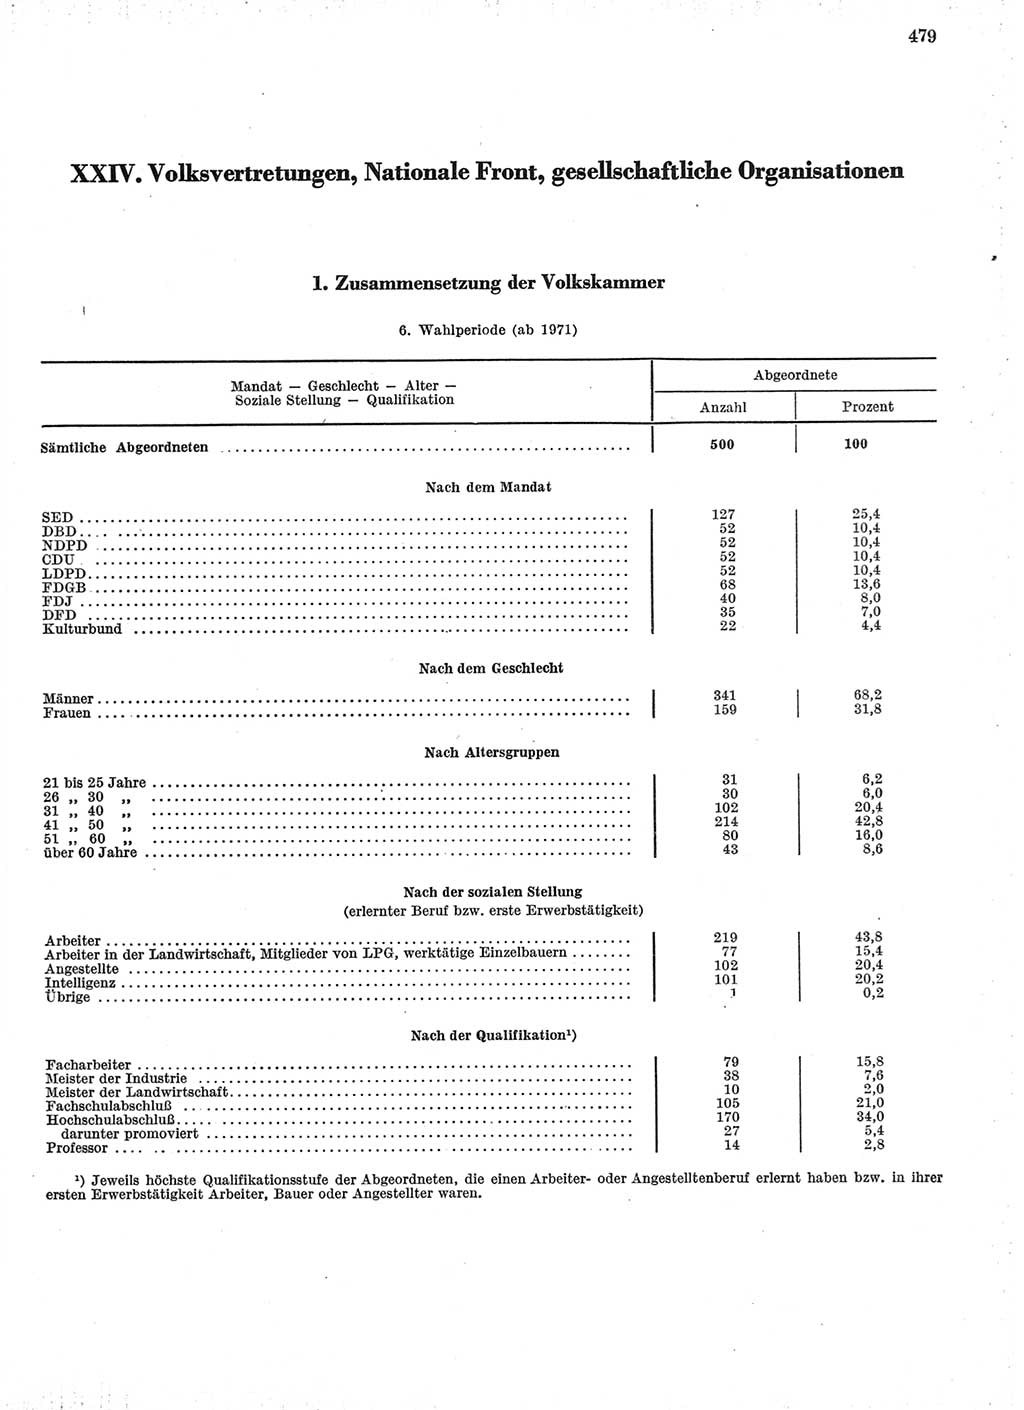 Statistisches Jahrbuch der Deutschen Demokratischen Republik (DDR) 1974, Seite 479 (Stat. Jb. DDR 1974, S. 479)